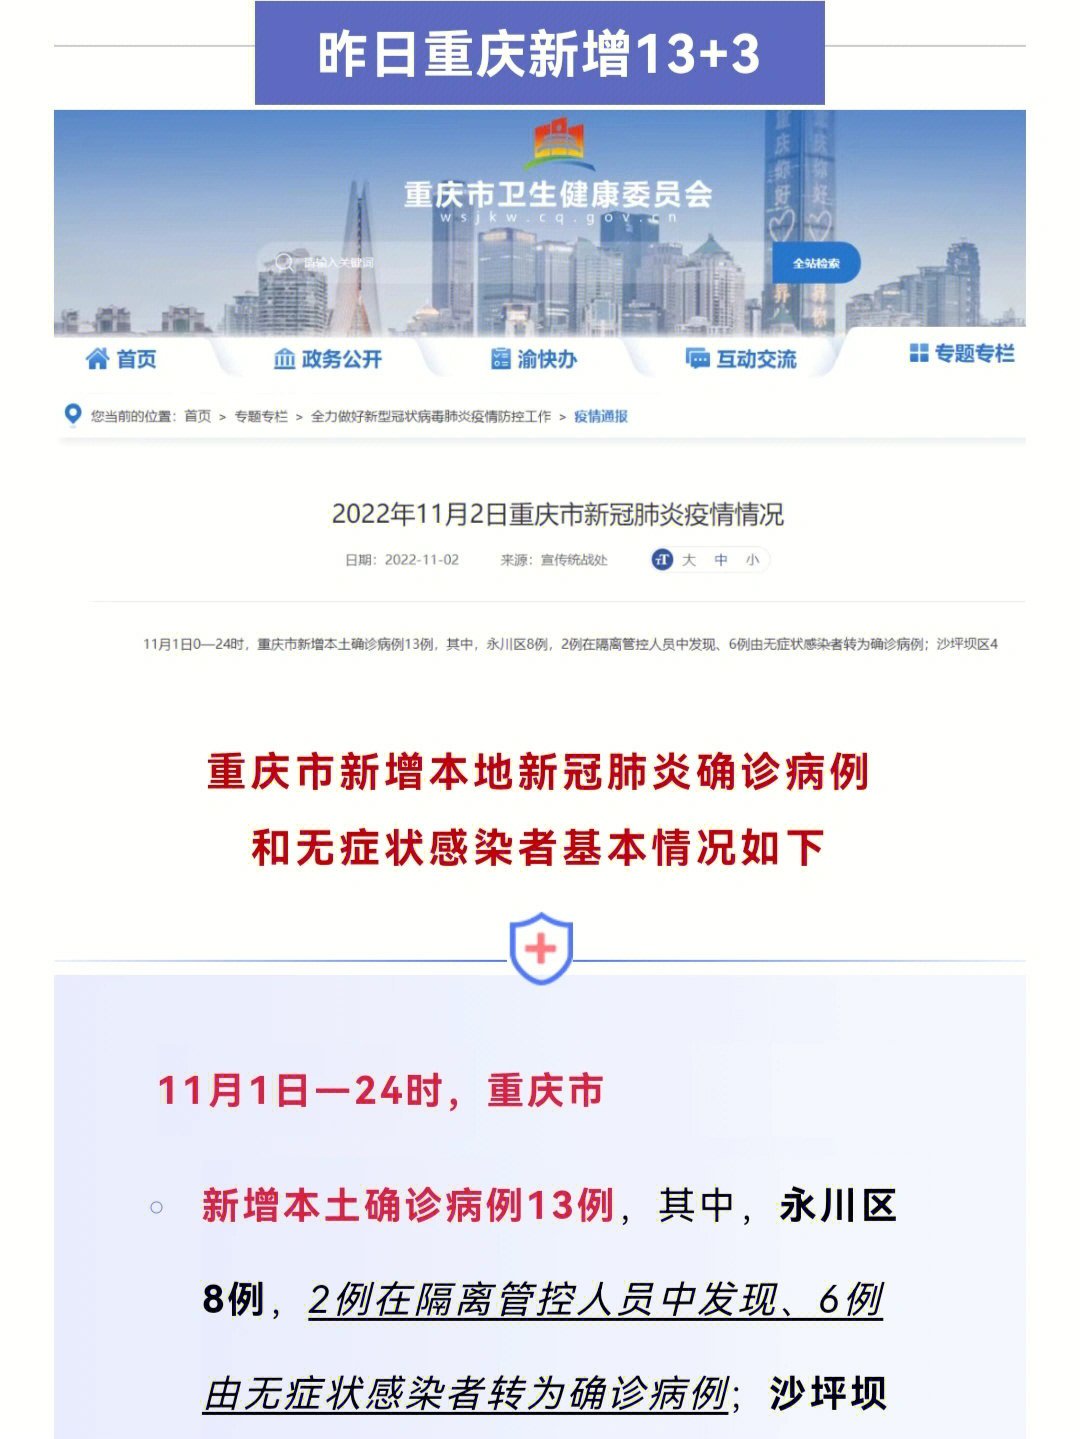 重庆昨日新增133沙坪坝感染者轨迹公布